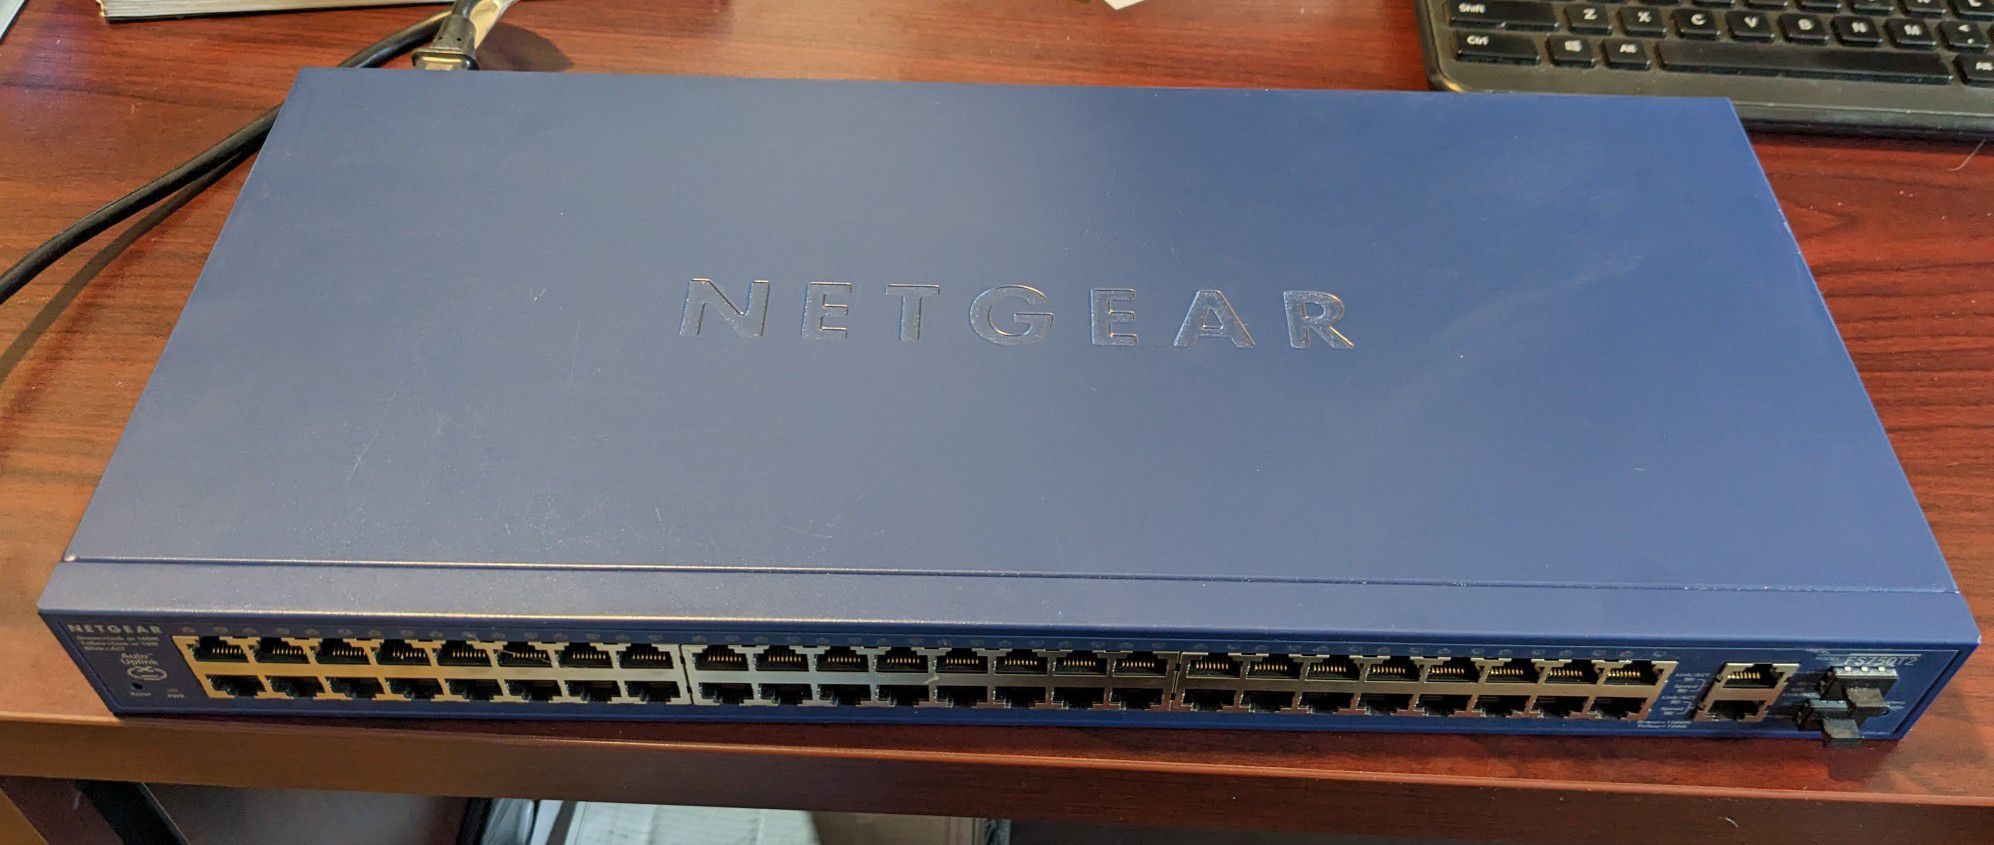 Netgear Smart Switch